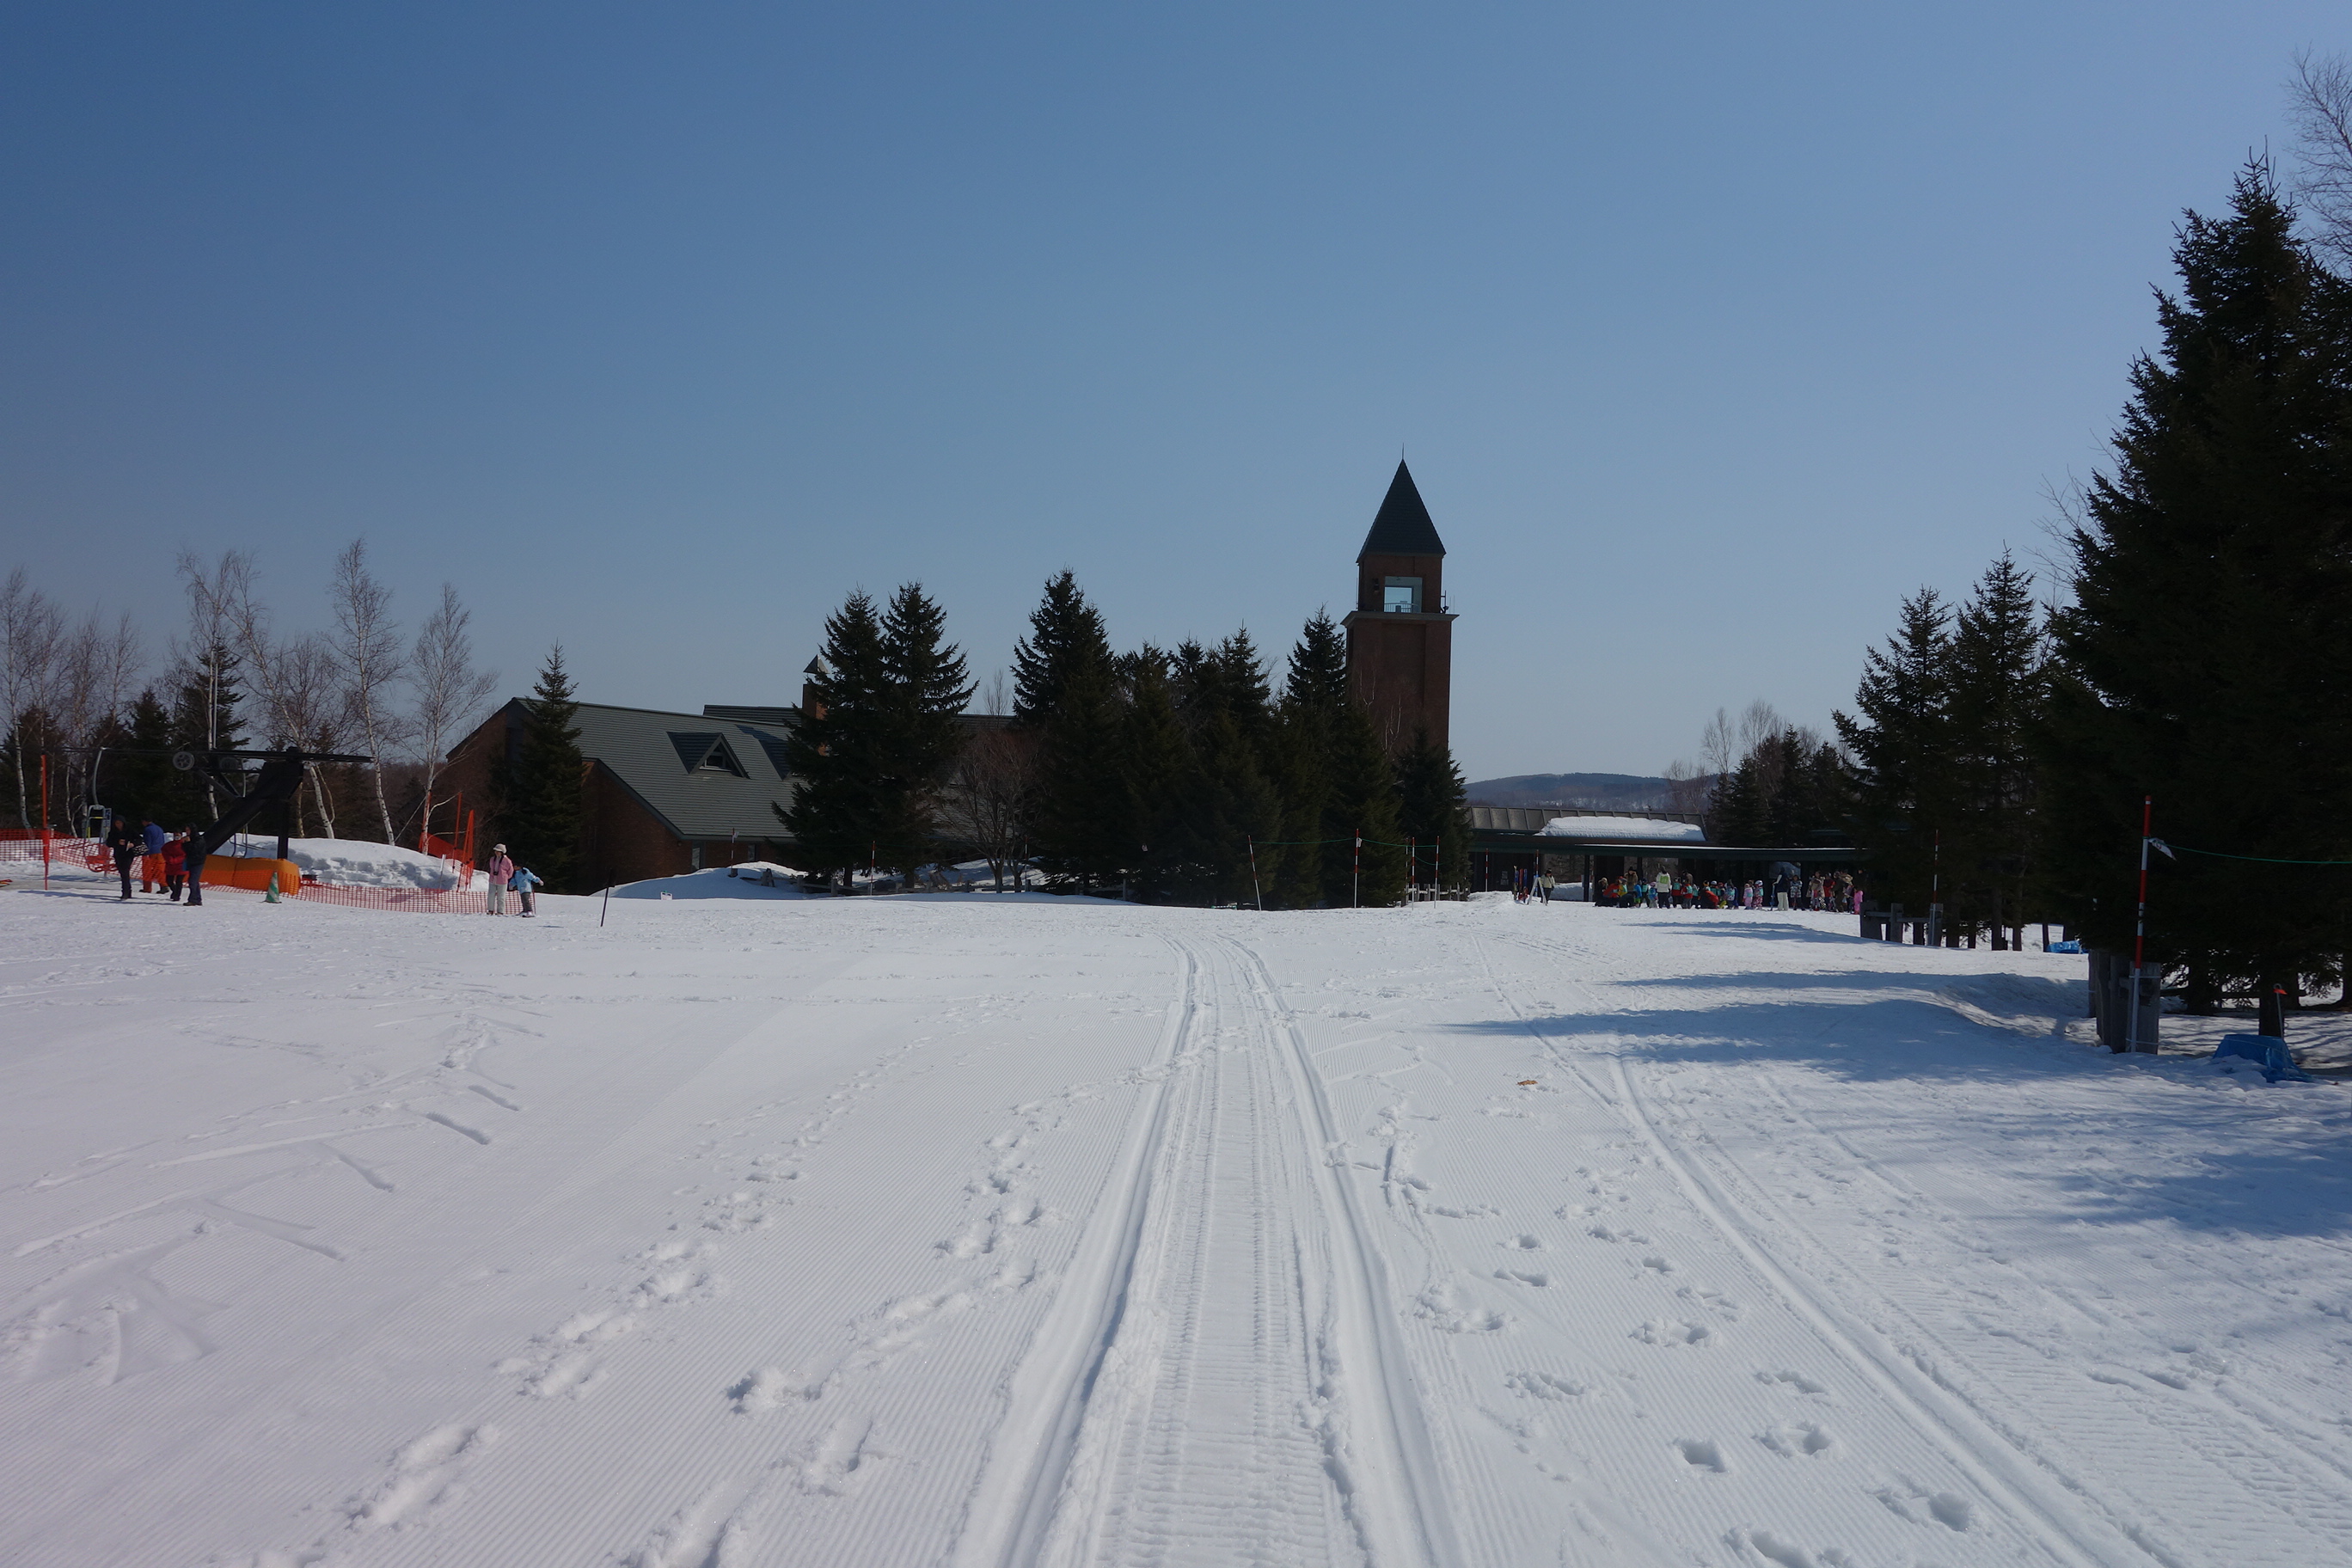 札幌免費玩雪、滑雪教學「滝野鈴蘭公園」北海道冬天親子好去處